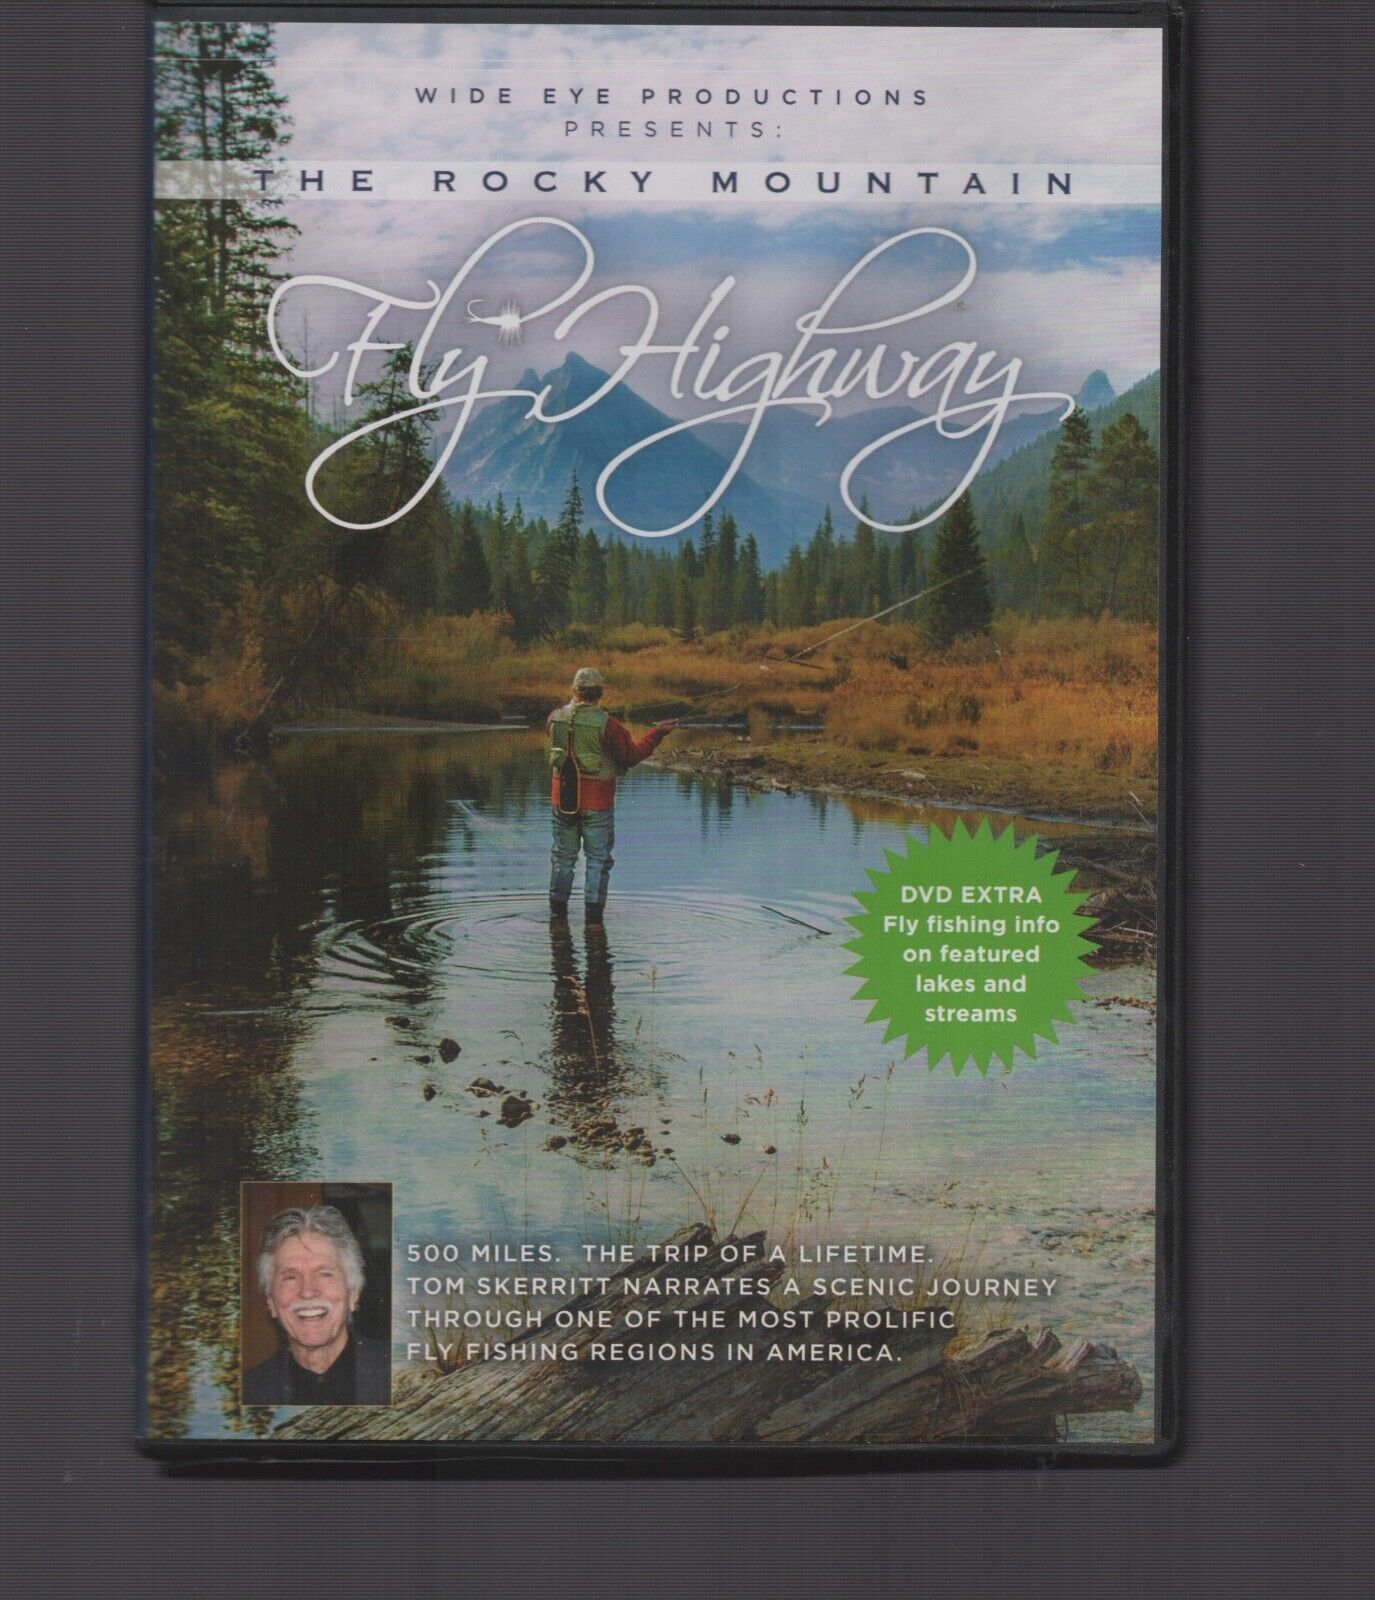 The Rocky Mountain Fly Highway / DVD / Fishing / Tom Skerritt (Narrator)